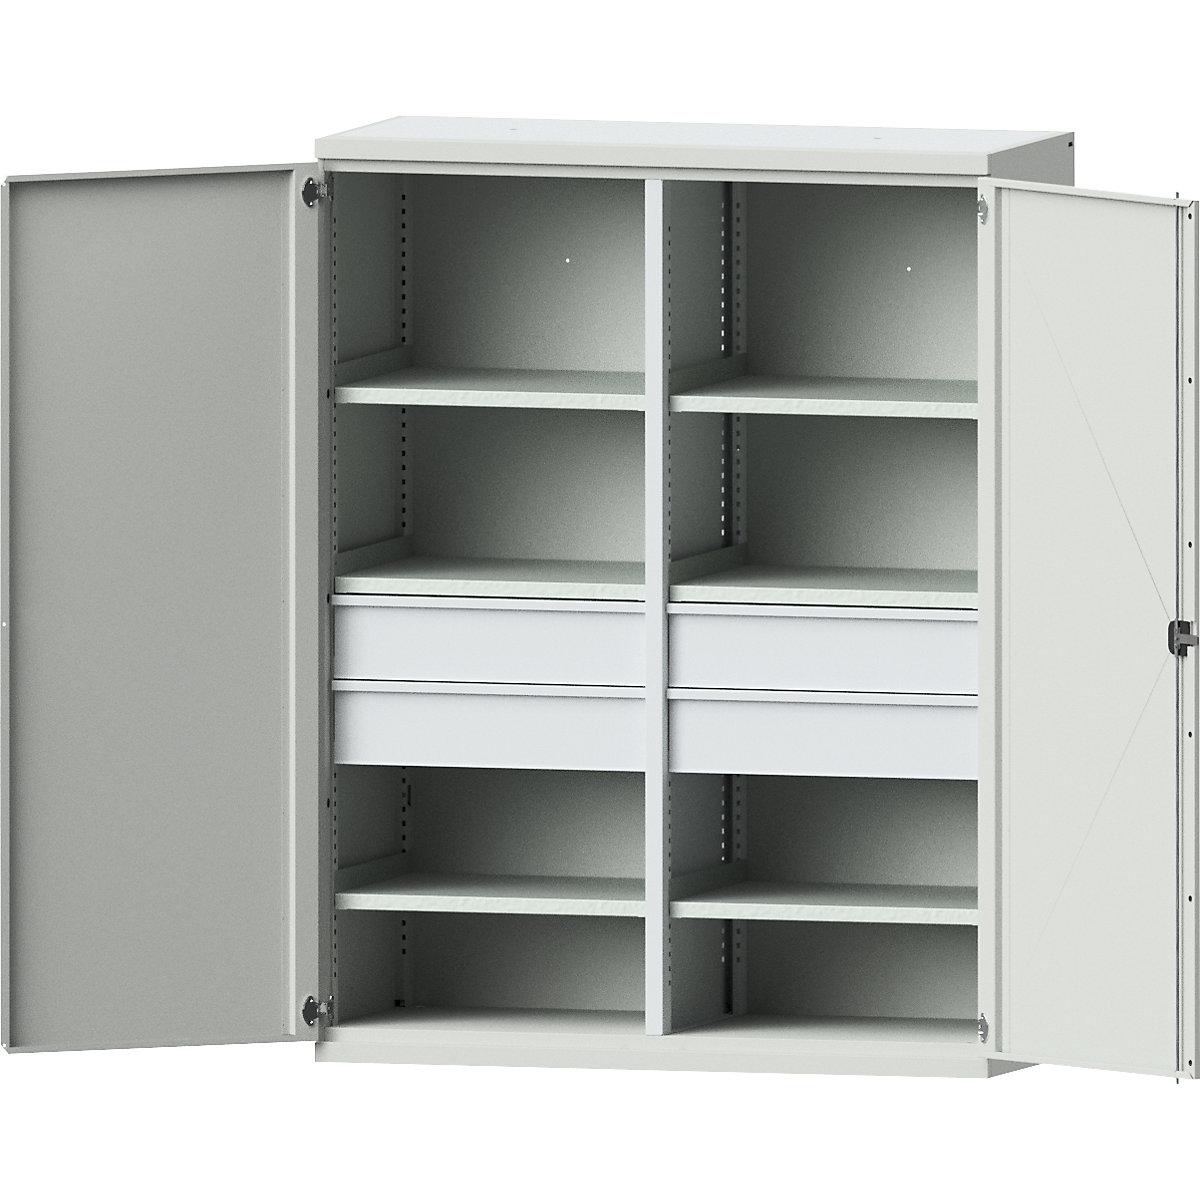 JUMBO heavy duty cupboard made of sheet steel - eurokraft pro